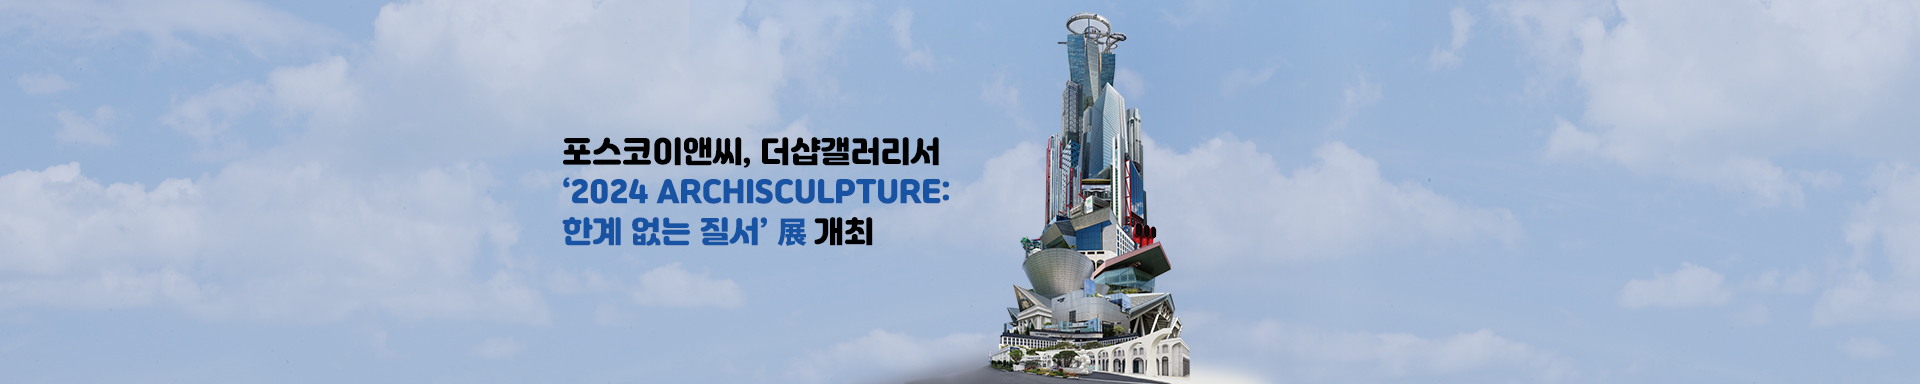 포스코이앤씨, 더샵갤러리에서 ‘2024 ARCHISCULPTURE: 한계 없는 질서’ 현대미술 전시회 개최